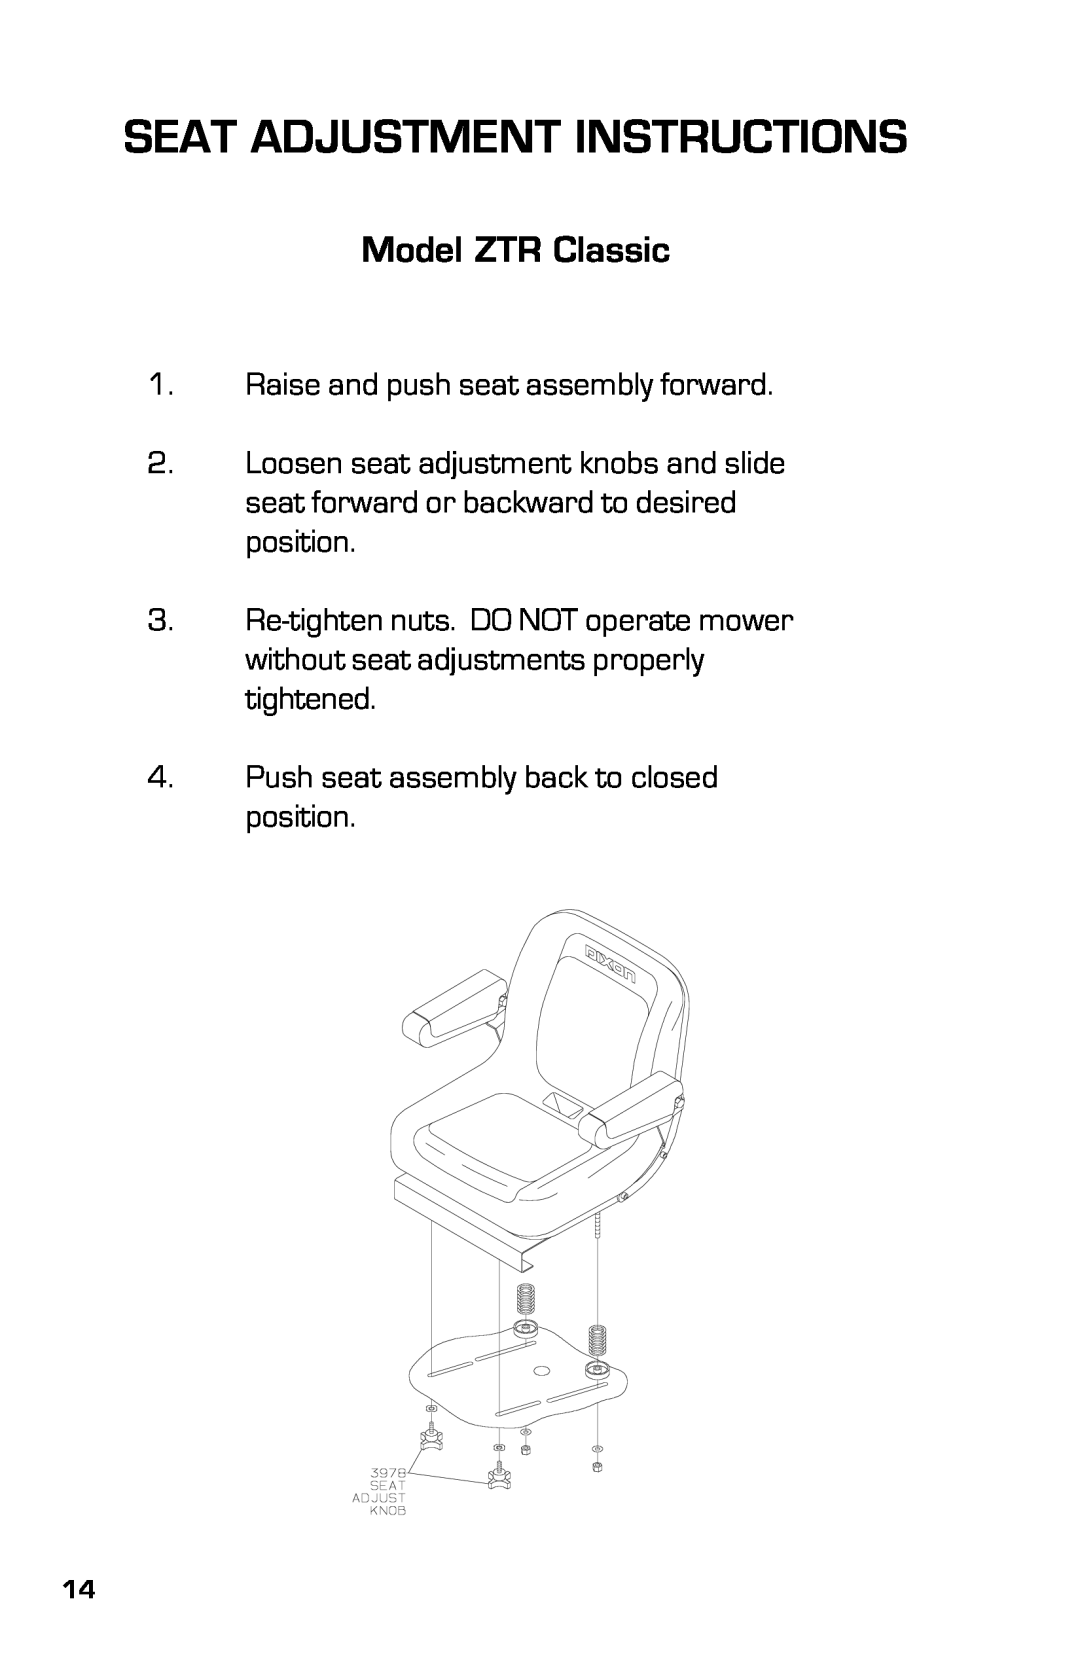 Dixon 2003, 13639-0702 manual Seat Adjustment Instructions, Model ZTR Classic 